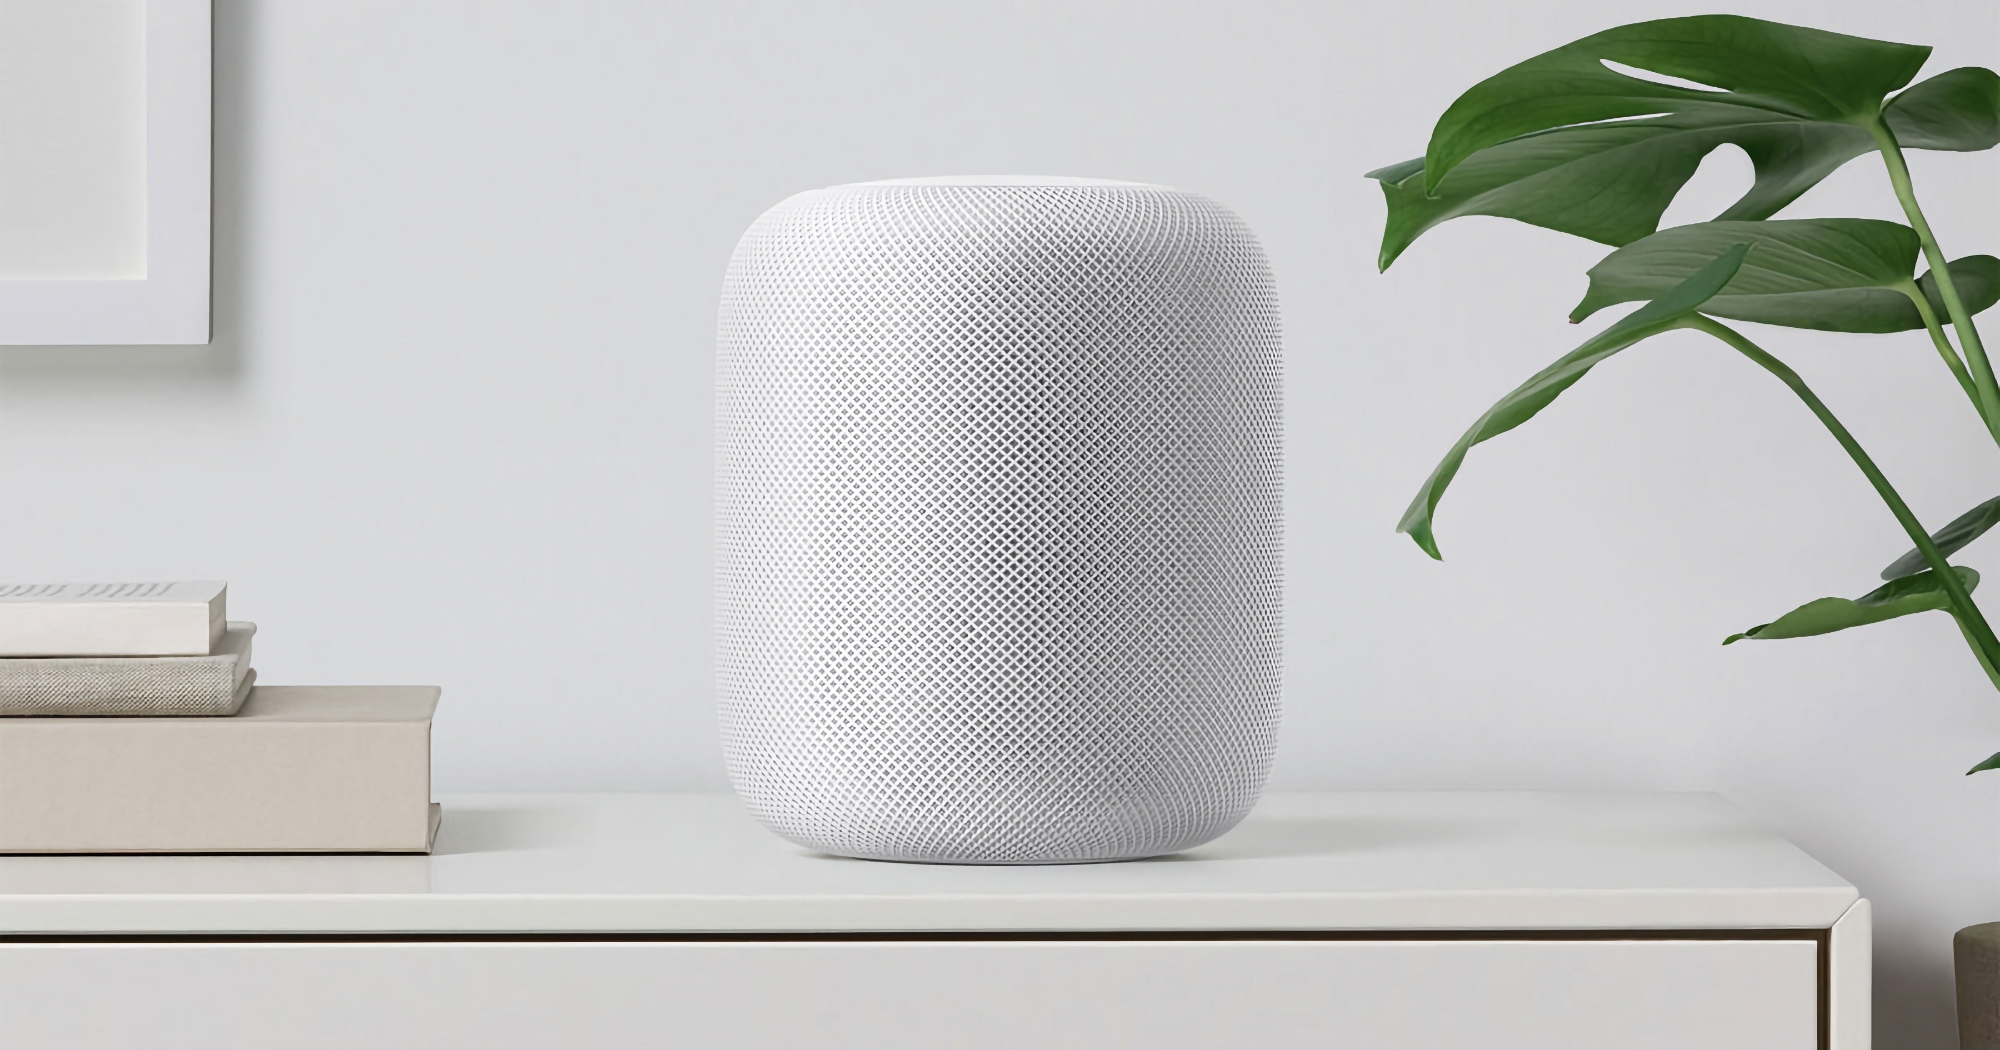 Unerwartet! Apple bereitet sich auf die Veröffentlichung eines neuen HomePod-Lautsprechers in voller Größe vor